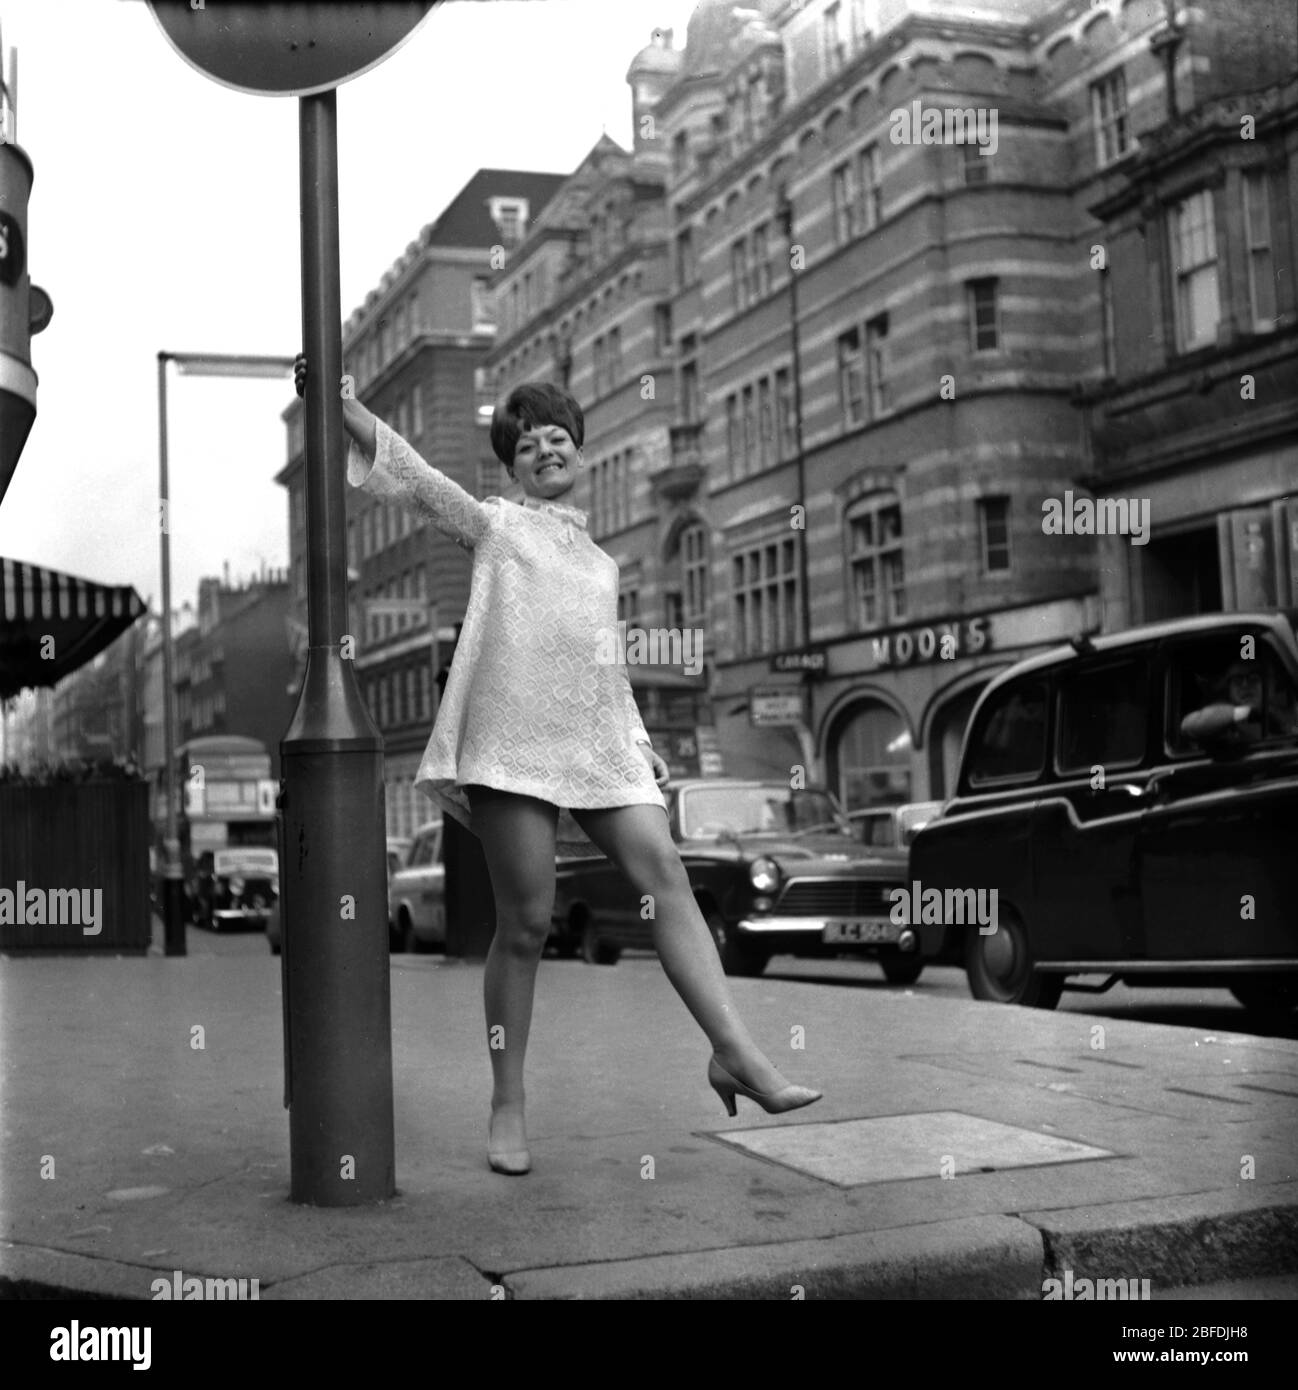 17 de mayo de 1967, Londres. Patsy Jones cantante pop de 1960 posan en una calle de Londres. Patsy tuvo un éxito en 1967 con Colors of Love. Foto de Tony Henshaw Archivo Foto de stock